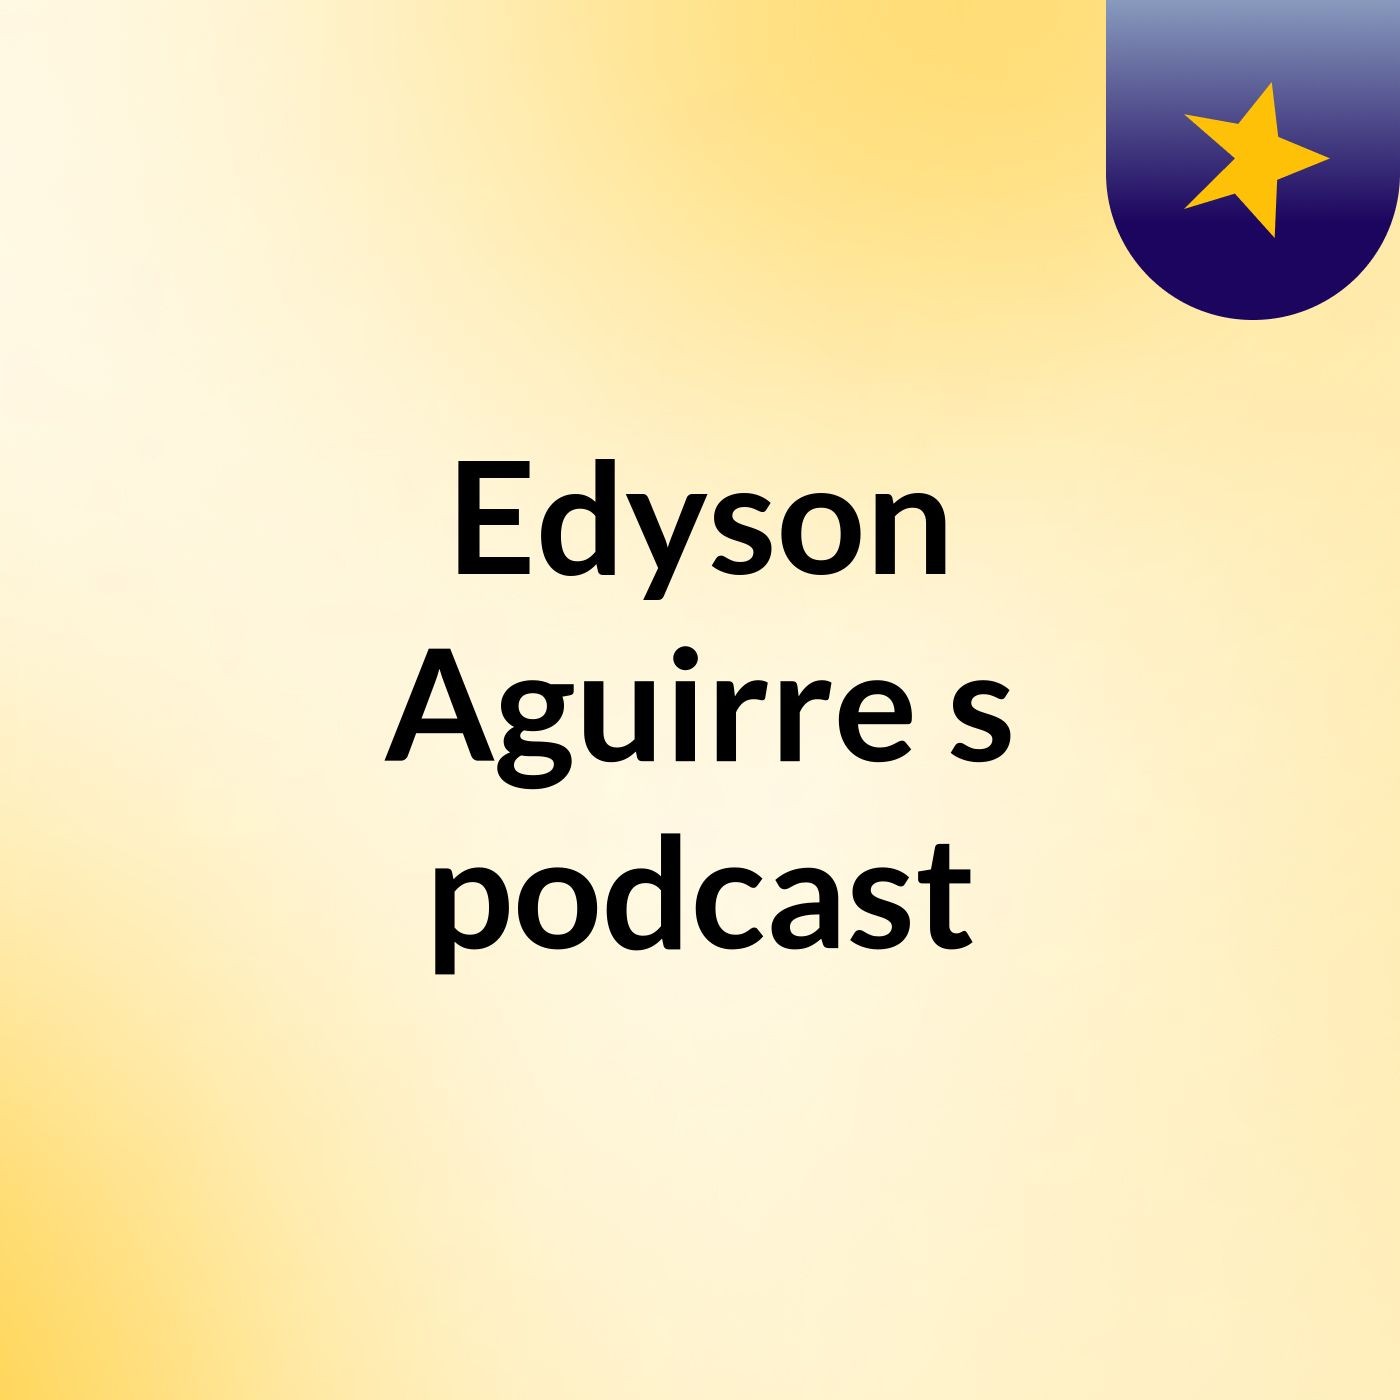 Edyson Aguirre's podcast